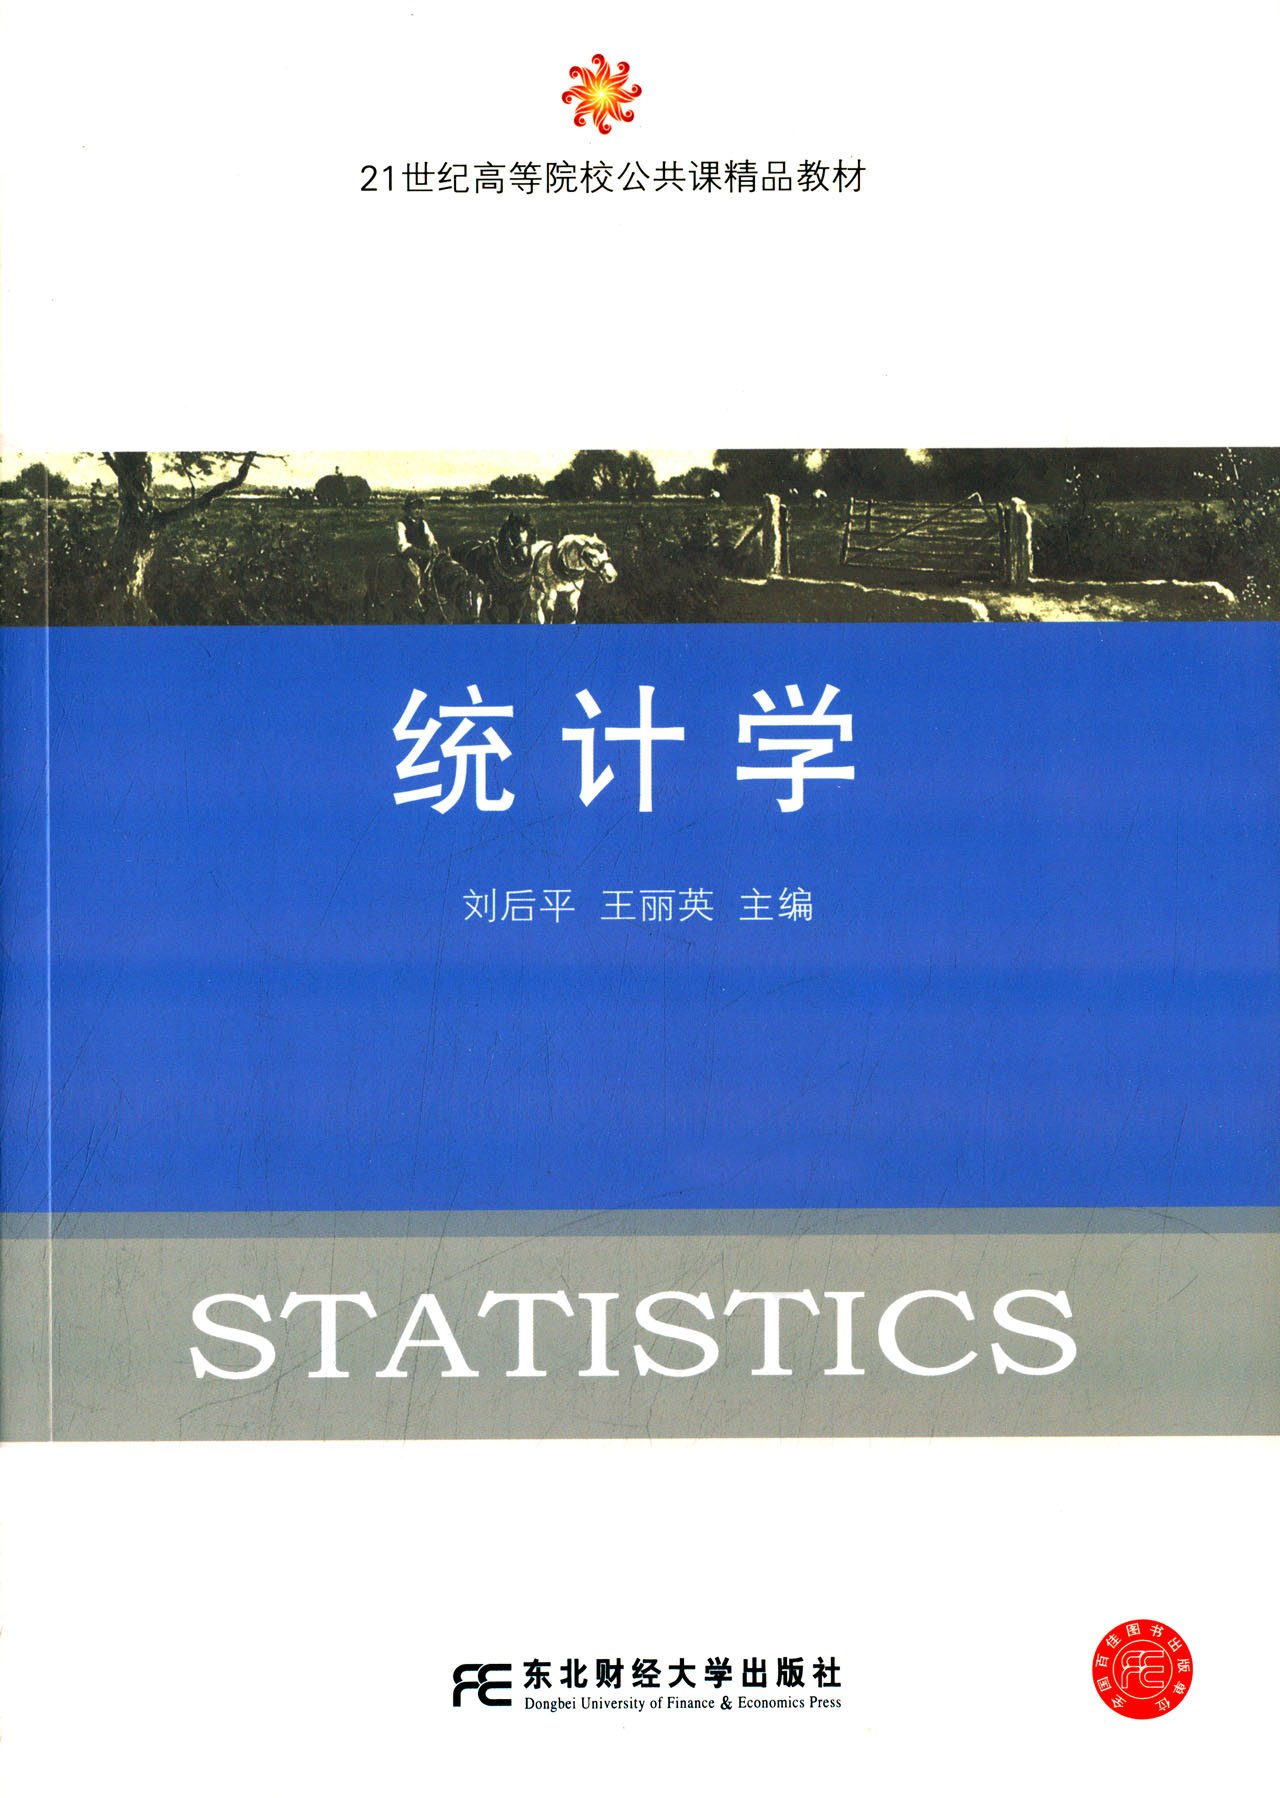 統計學(劉後平、王麗英編著書籍)